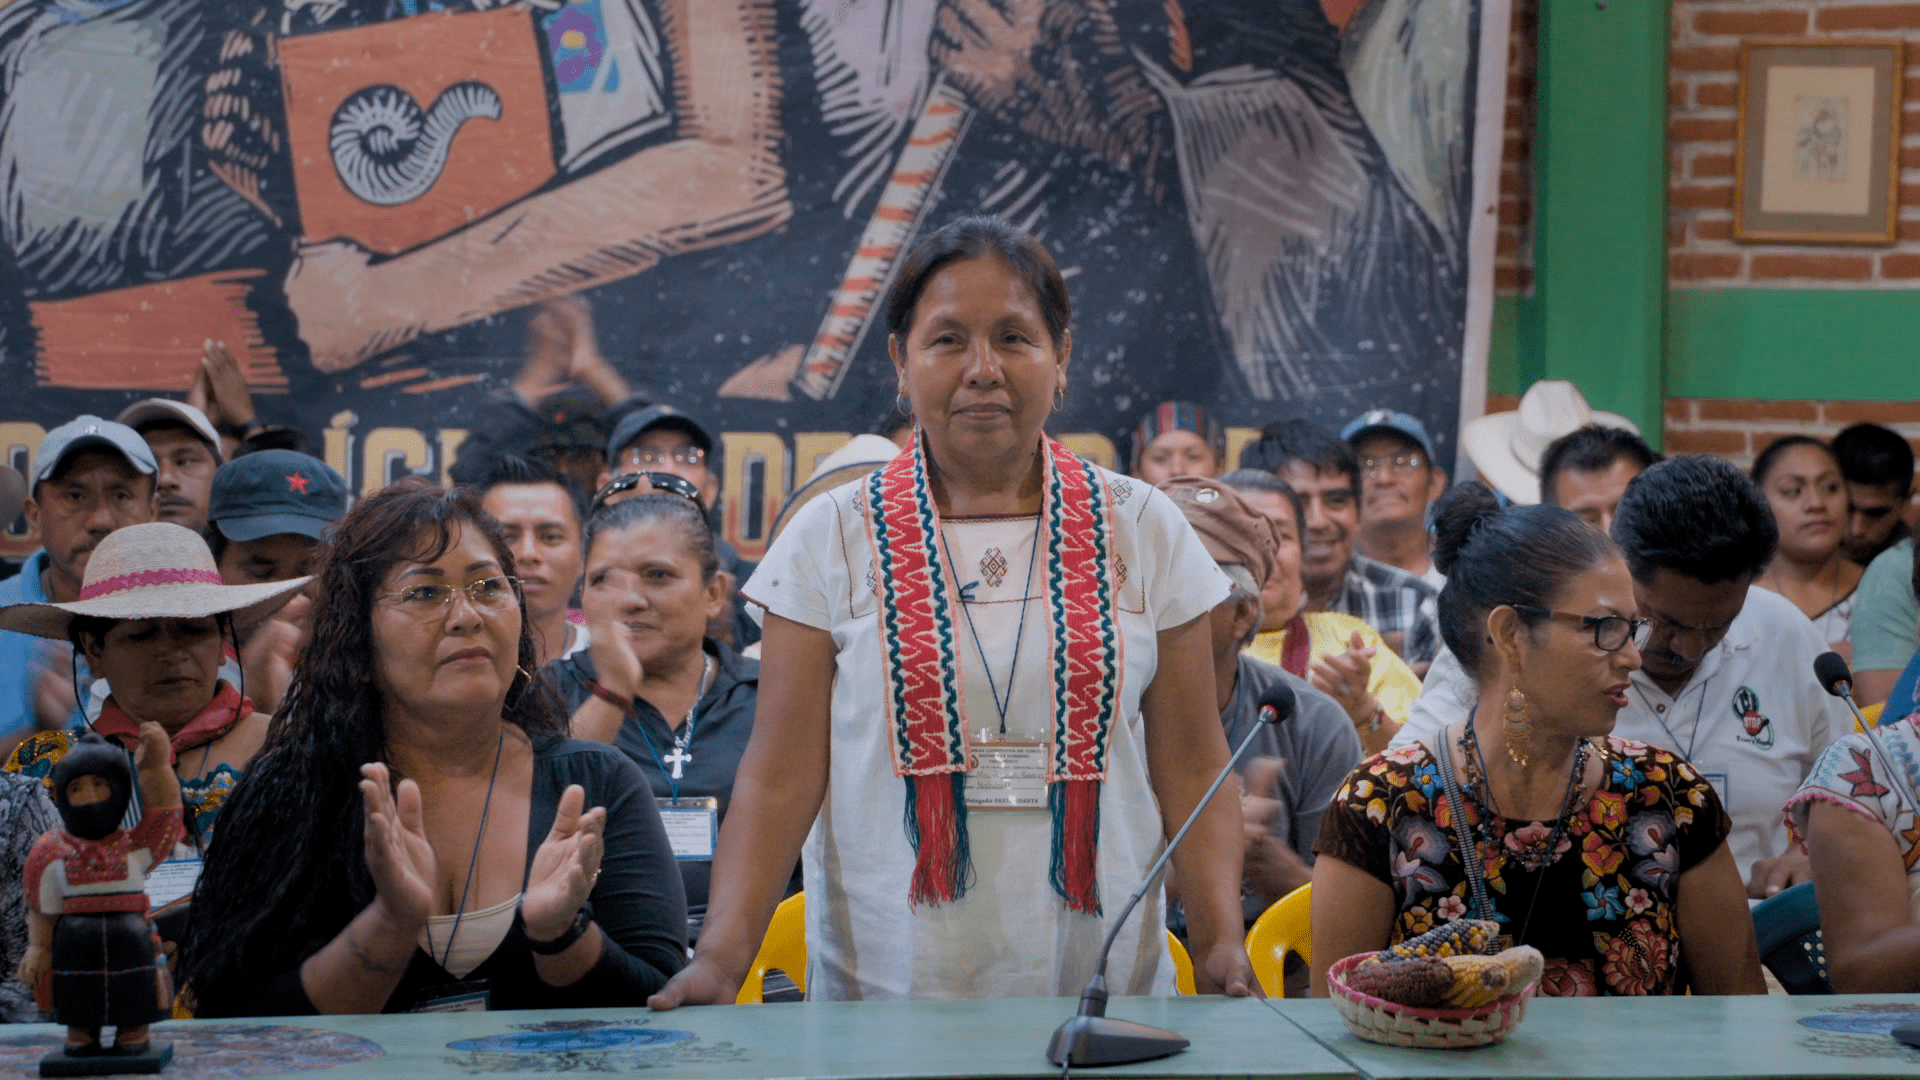 El día que una mujer indígena aspiró a ser presidenta de México